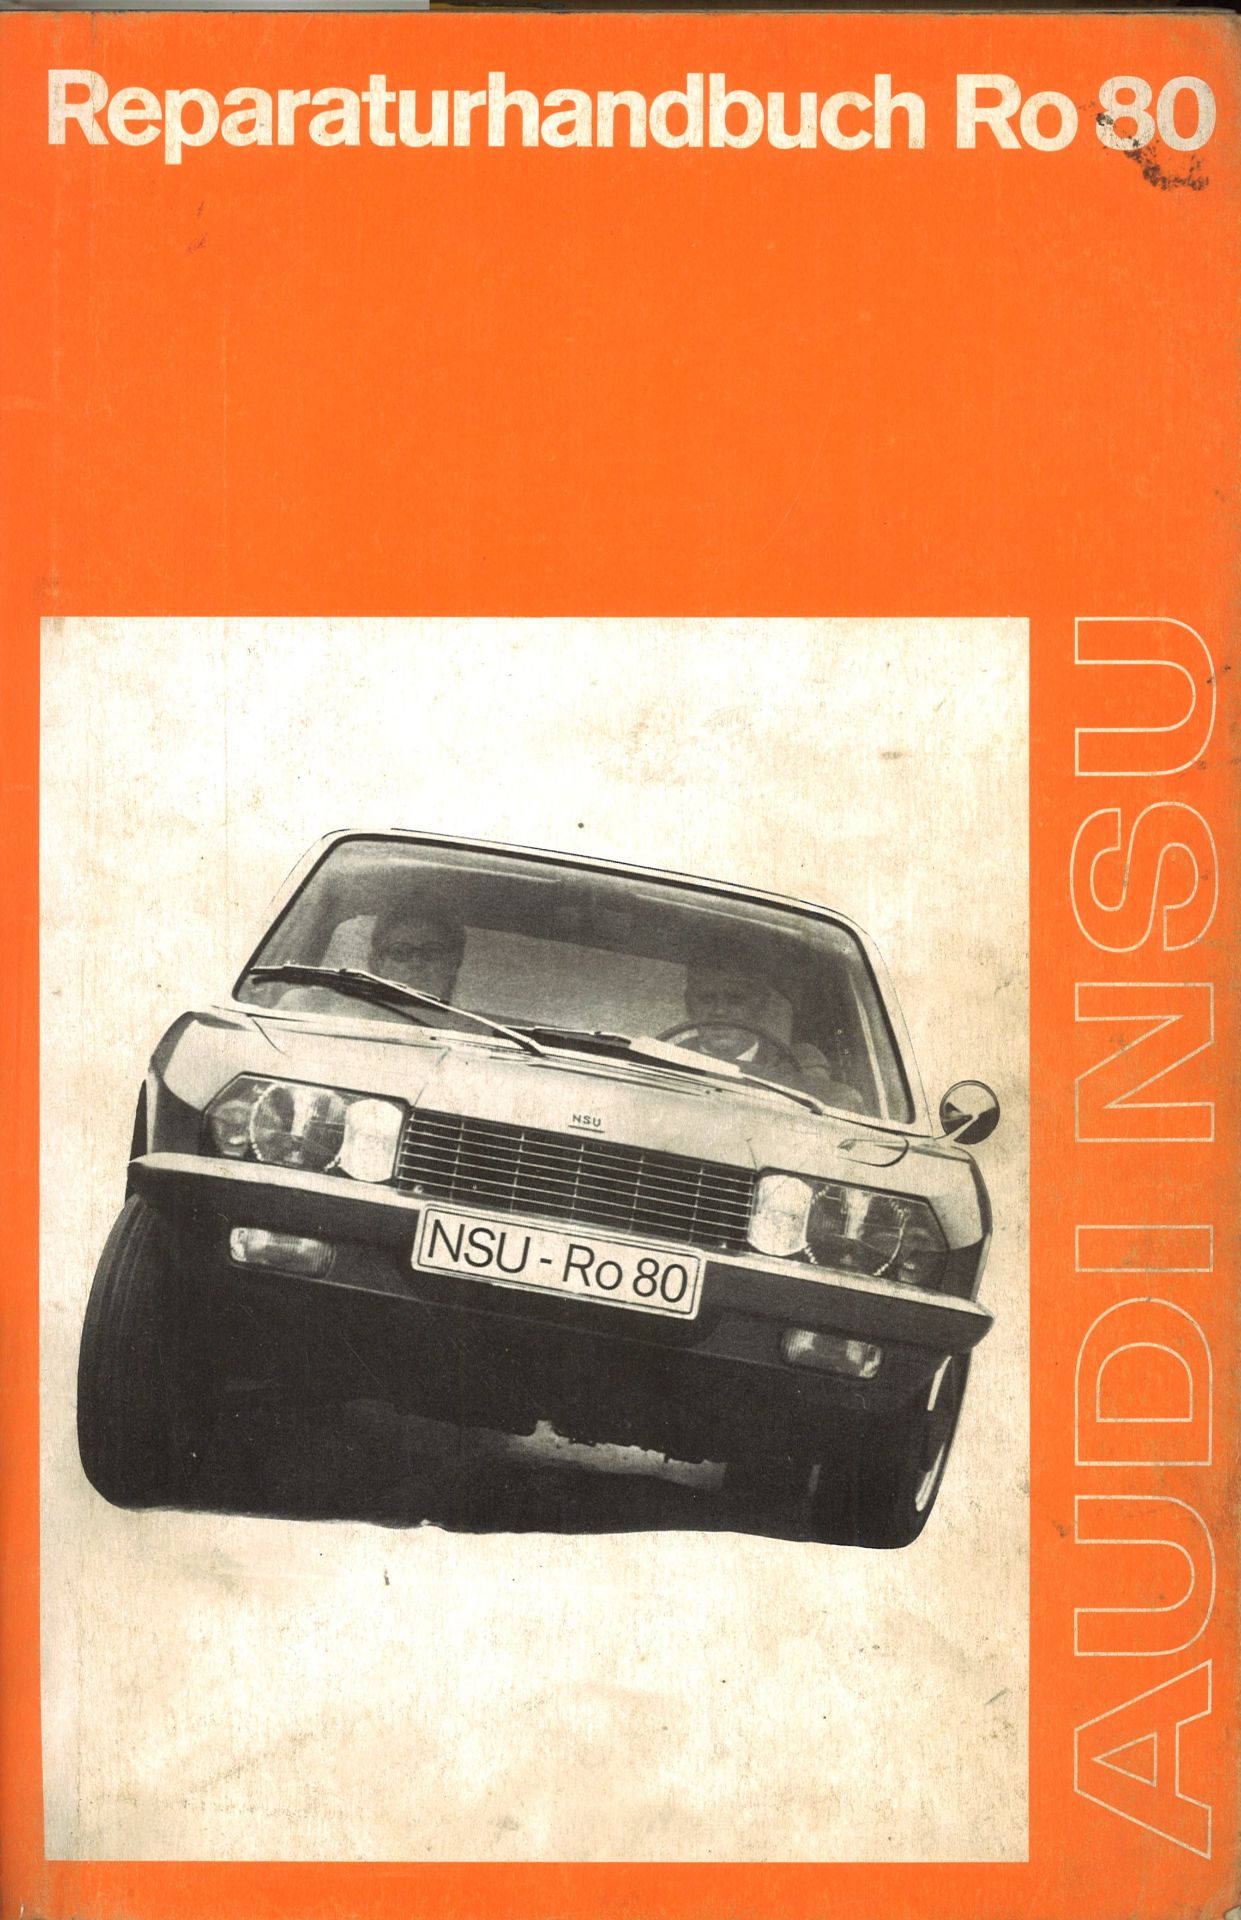 Aus Oldtimer Sammlung! Audi NSU "Reparaturhandbuch Ro 80" Neuausgabe - 1973. Echtes - Bild 2 aus 3